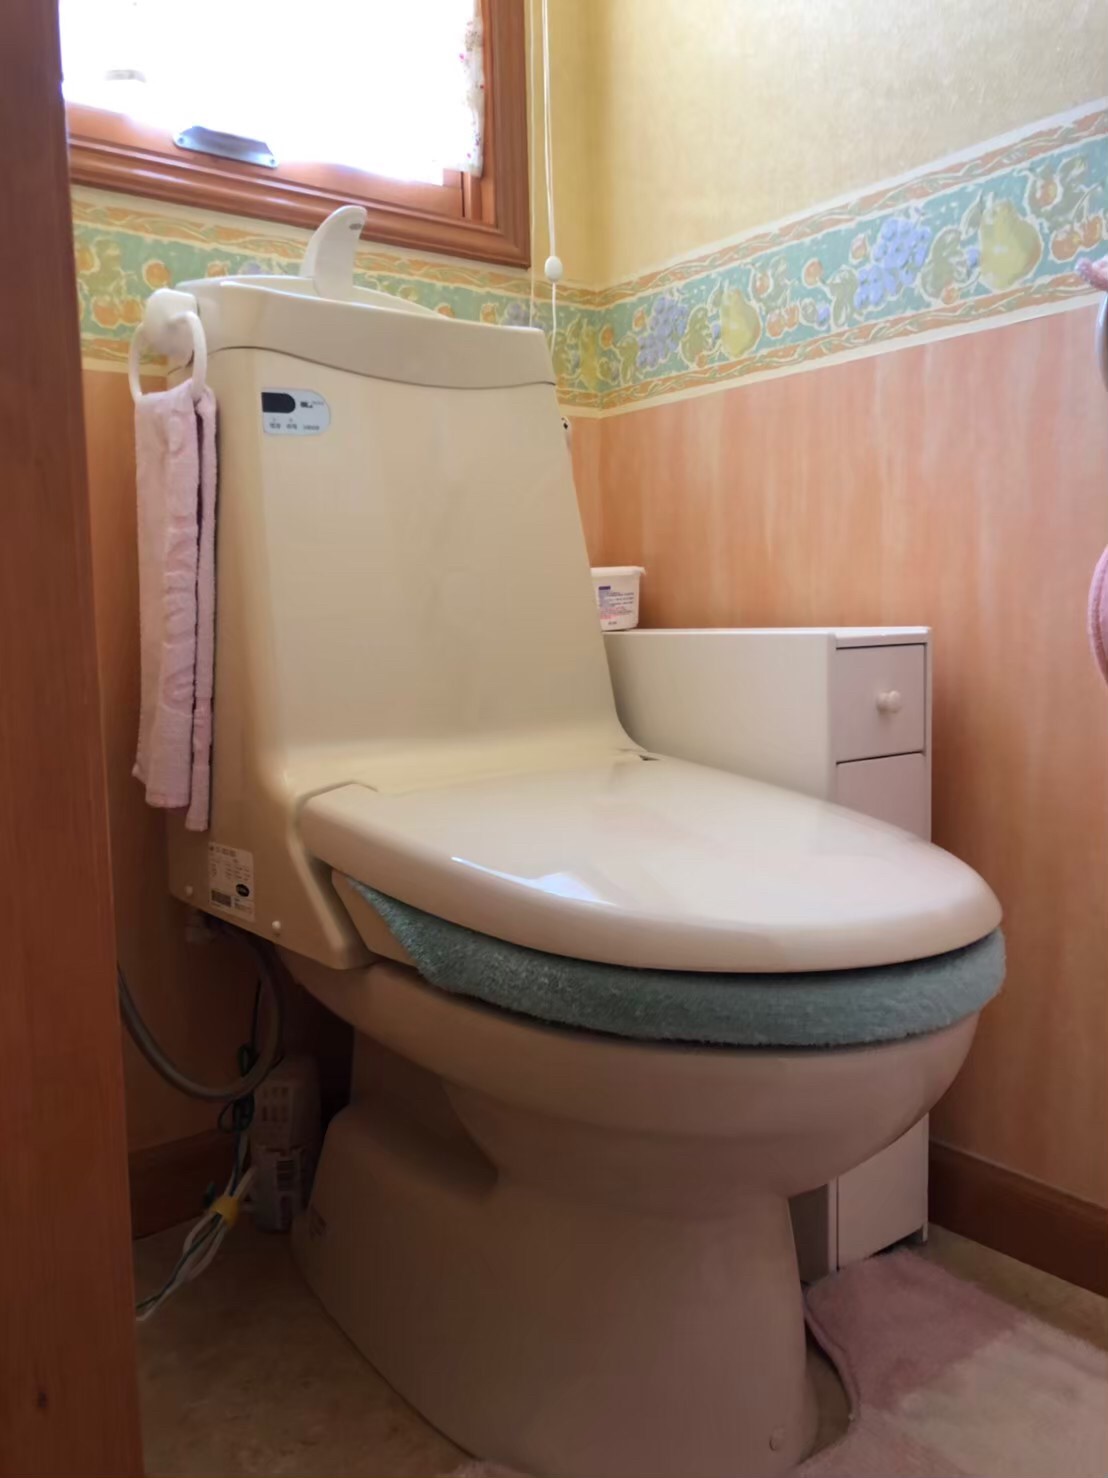 千葉県浦安市 戸建て アクセントのある壁紙でおしゃれなトイレ空間へ 株式会社ボンズビルダー